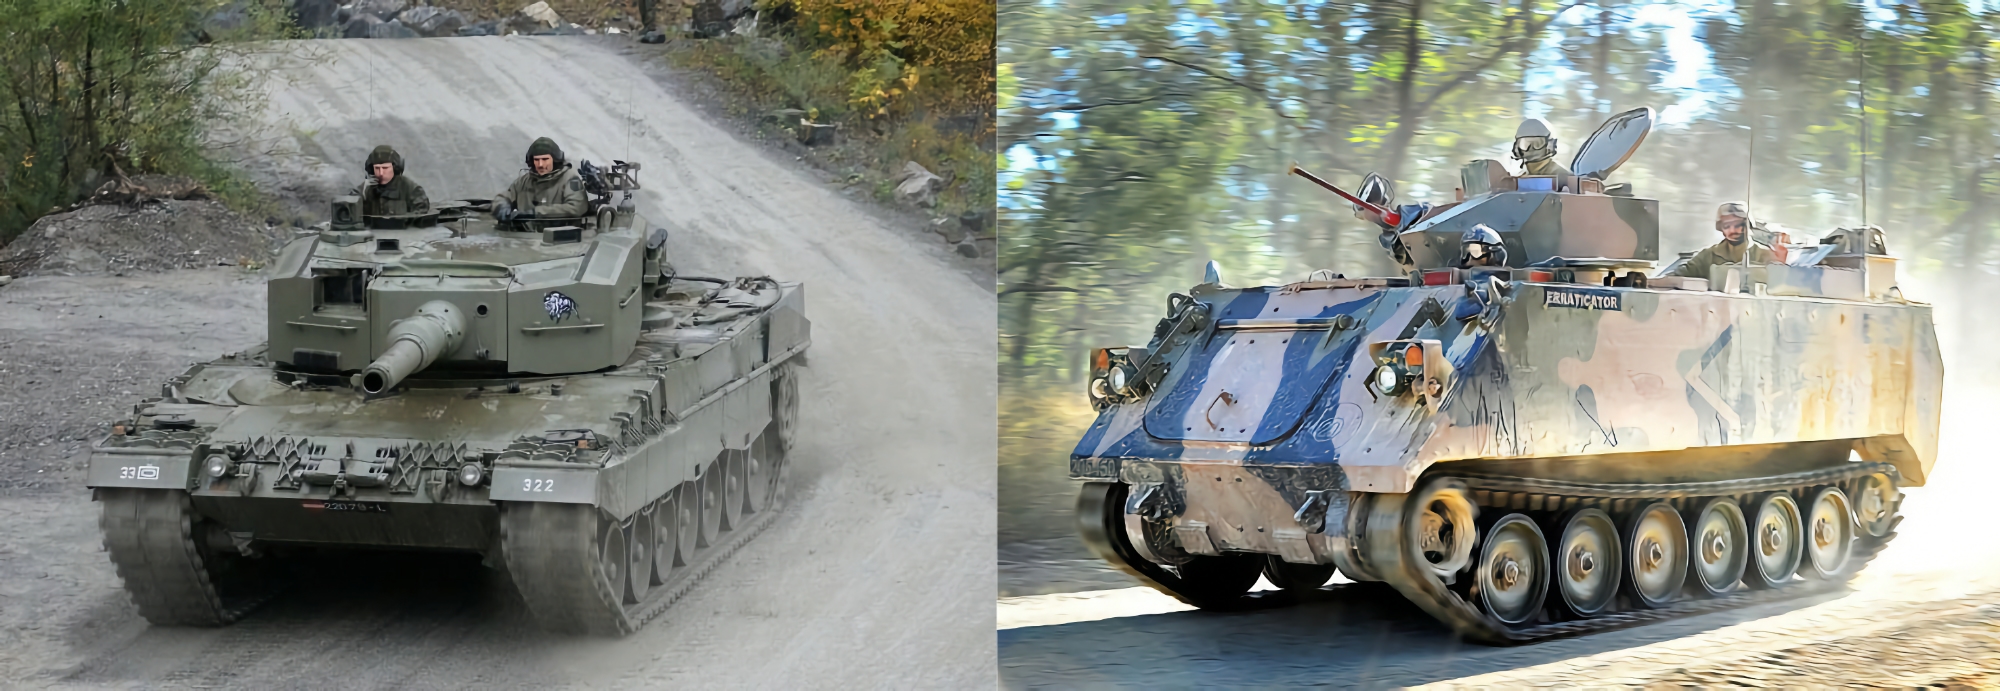 La Spagna inizia a trasferire all'Ucraina i carri armati Leopard 2A4 e i veicoli corazzati per il trasporto di personale M113